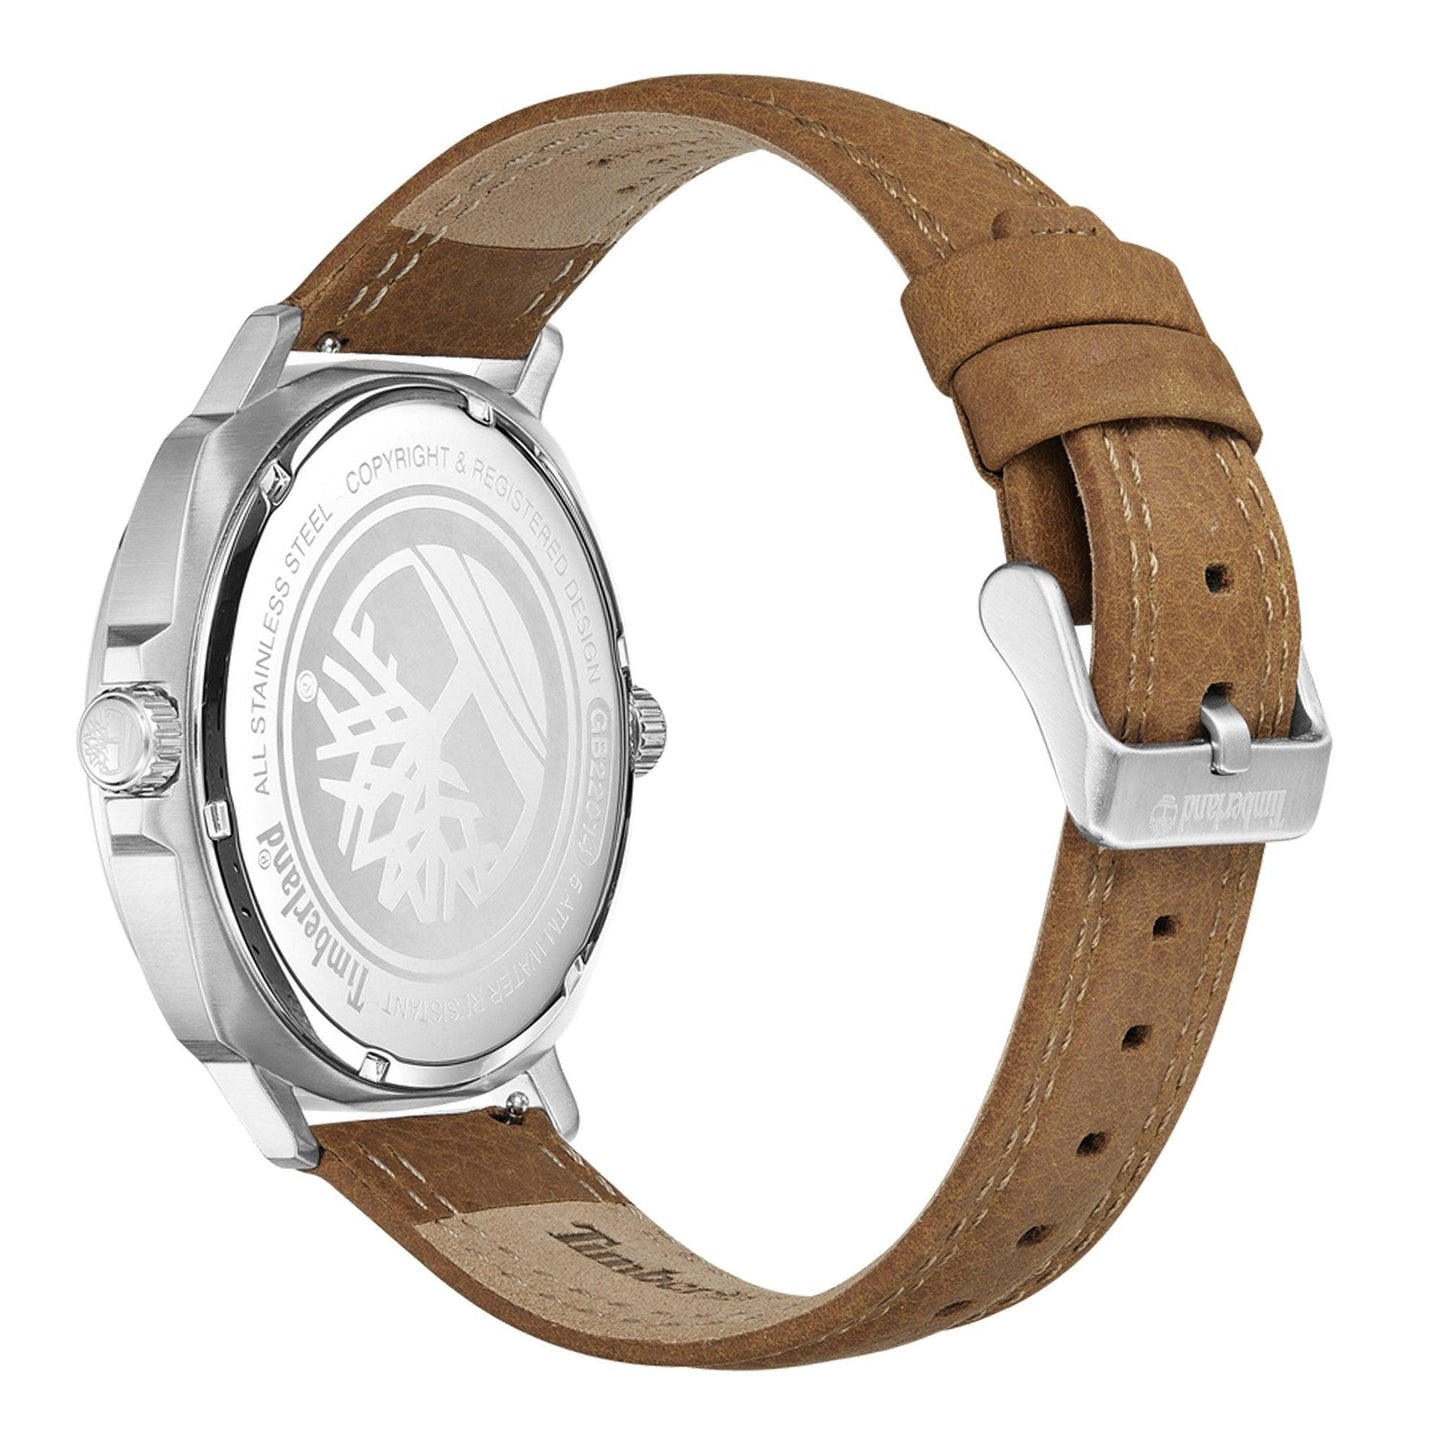 Timberland Breakheart TDWGB2201402 orologio uomo al quarzo - Kechiq Concept Boutique